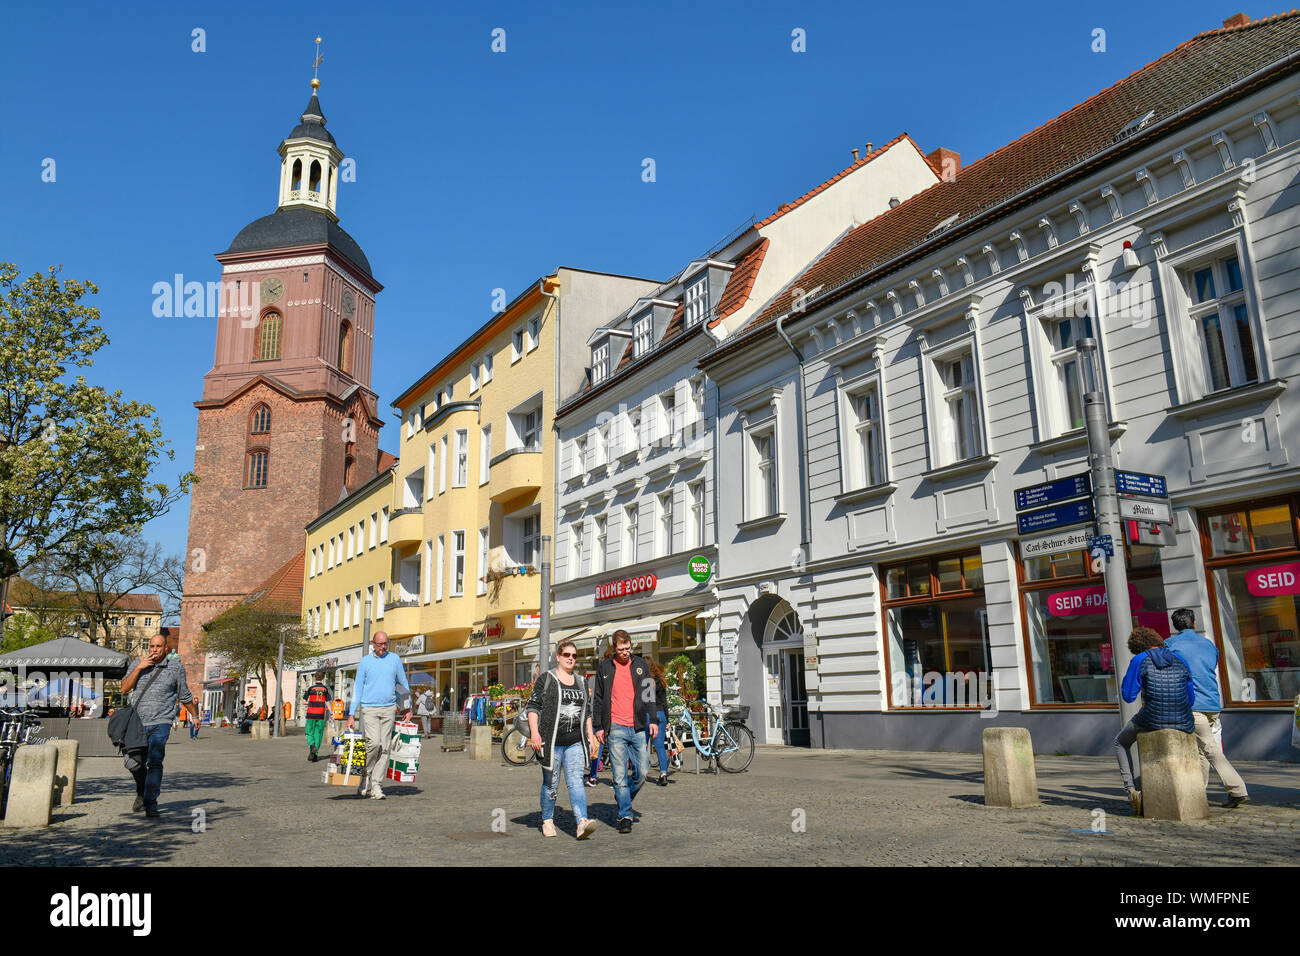 Fussgaengerzone, Einkaufstrasse, Carl-Schurz-strasse, Altstadt, Spandau, Berlin, Deutschland Stock Photo